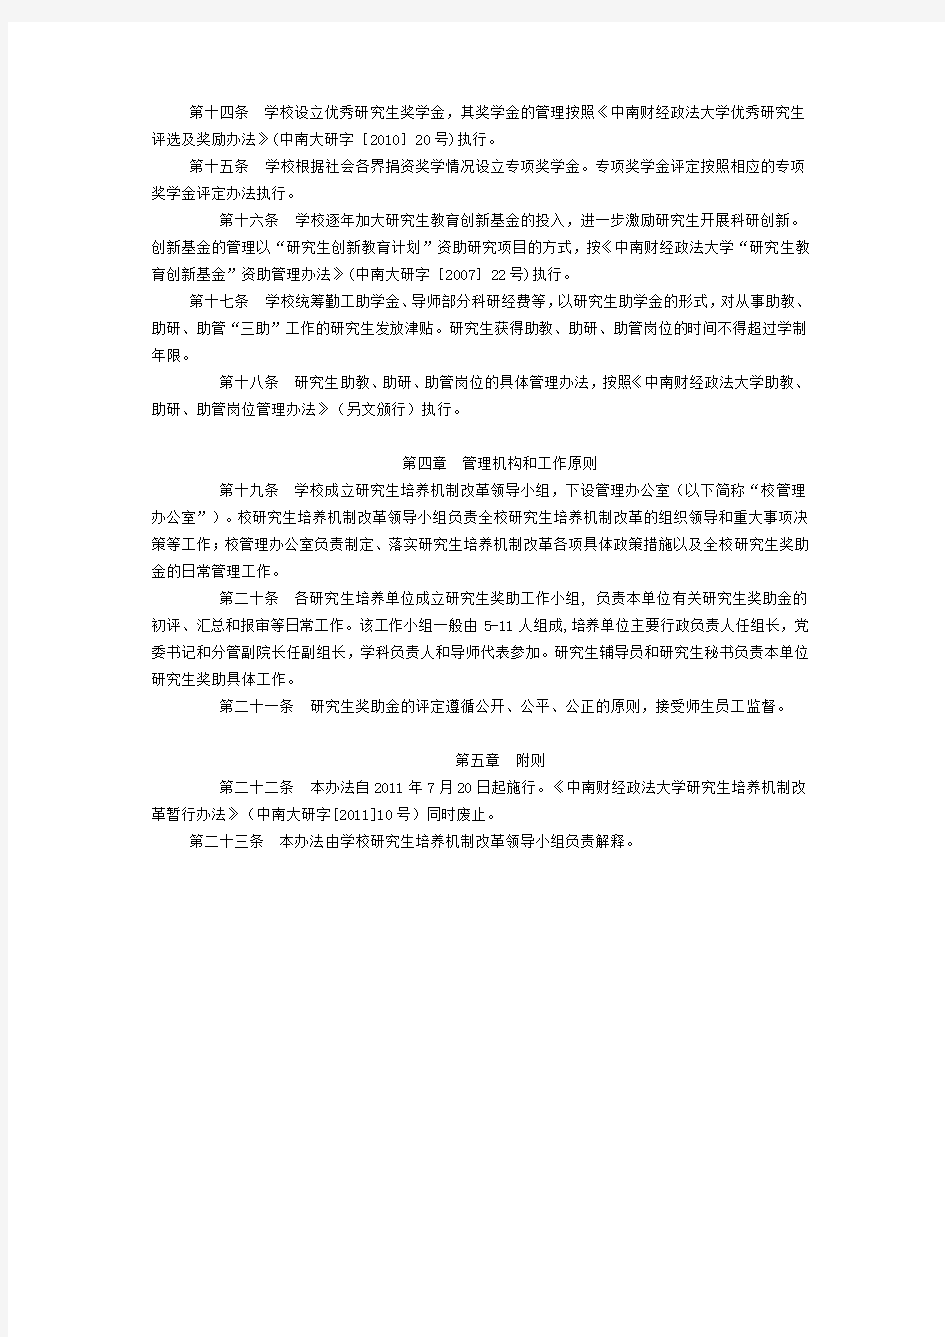 中南财经政法大学研究生培养机制改革办法